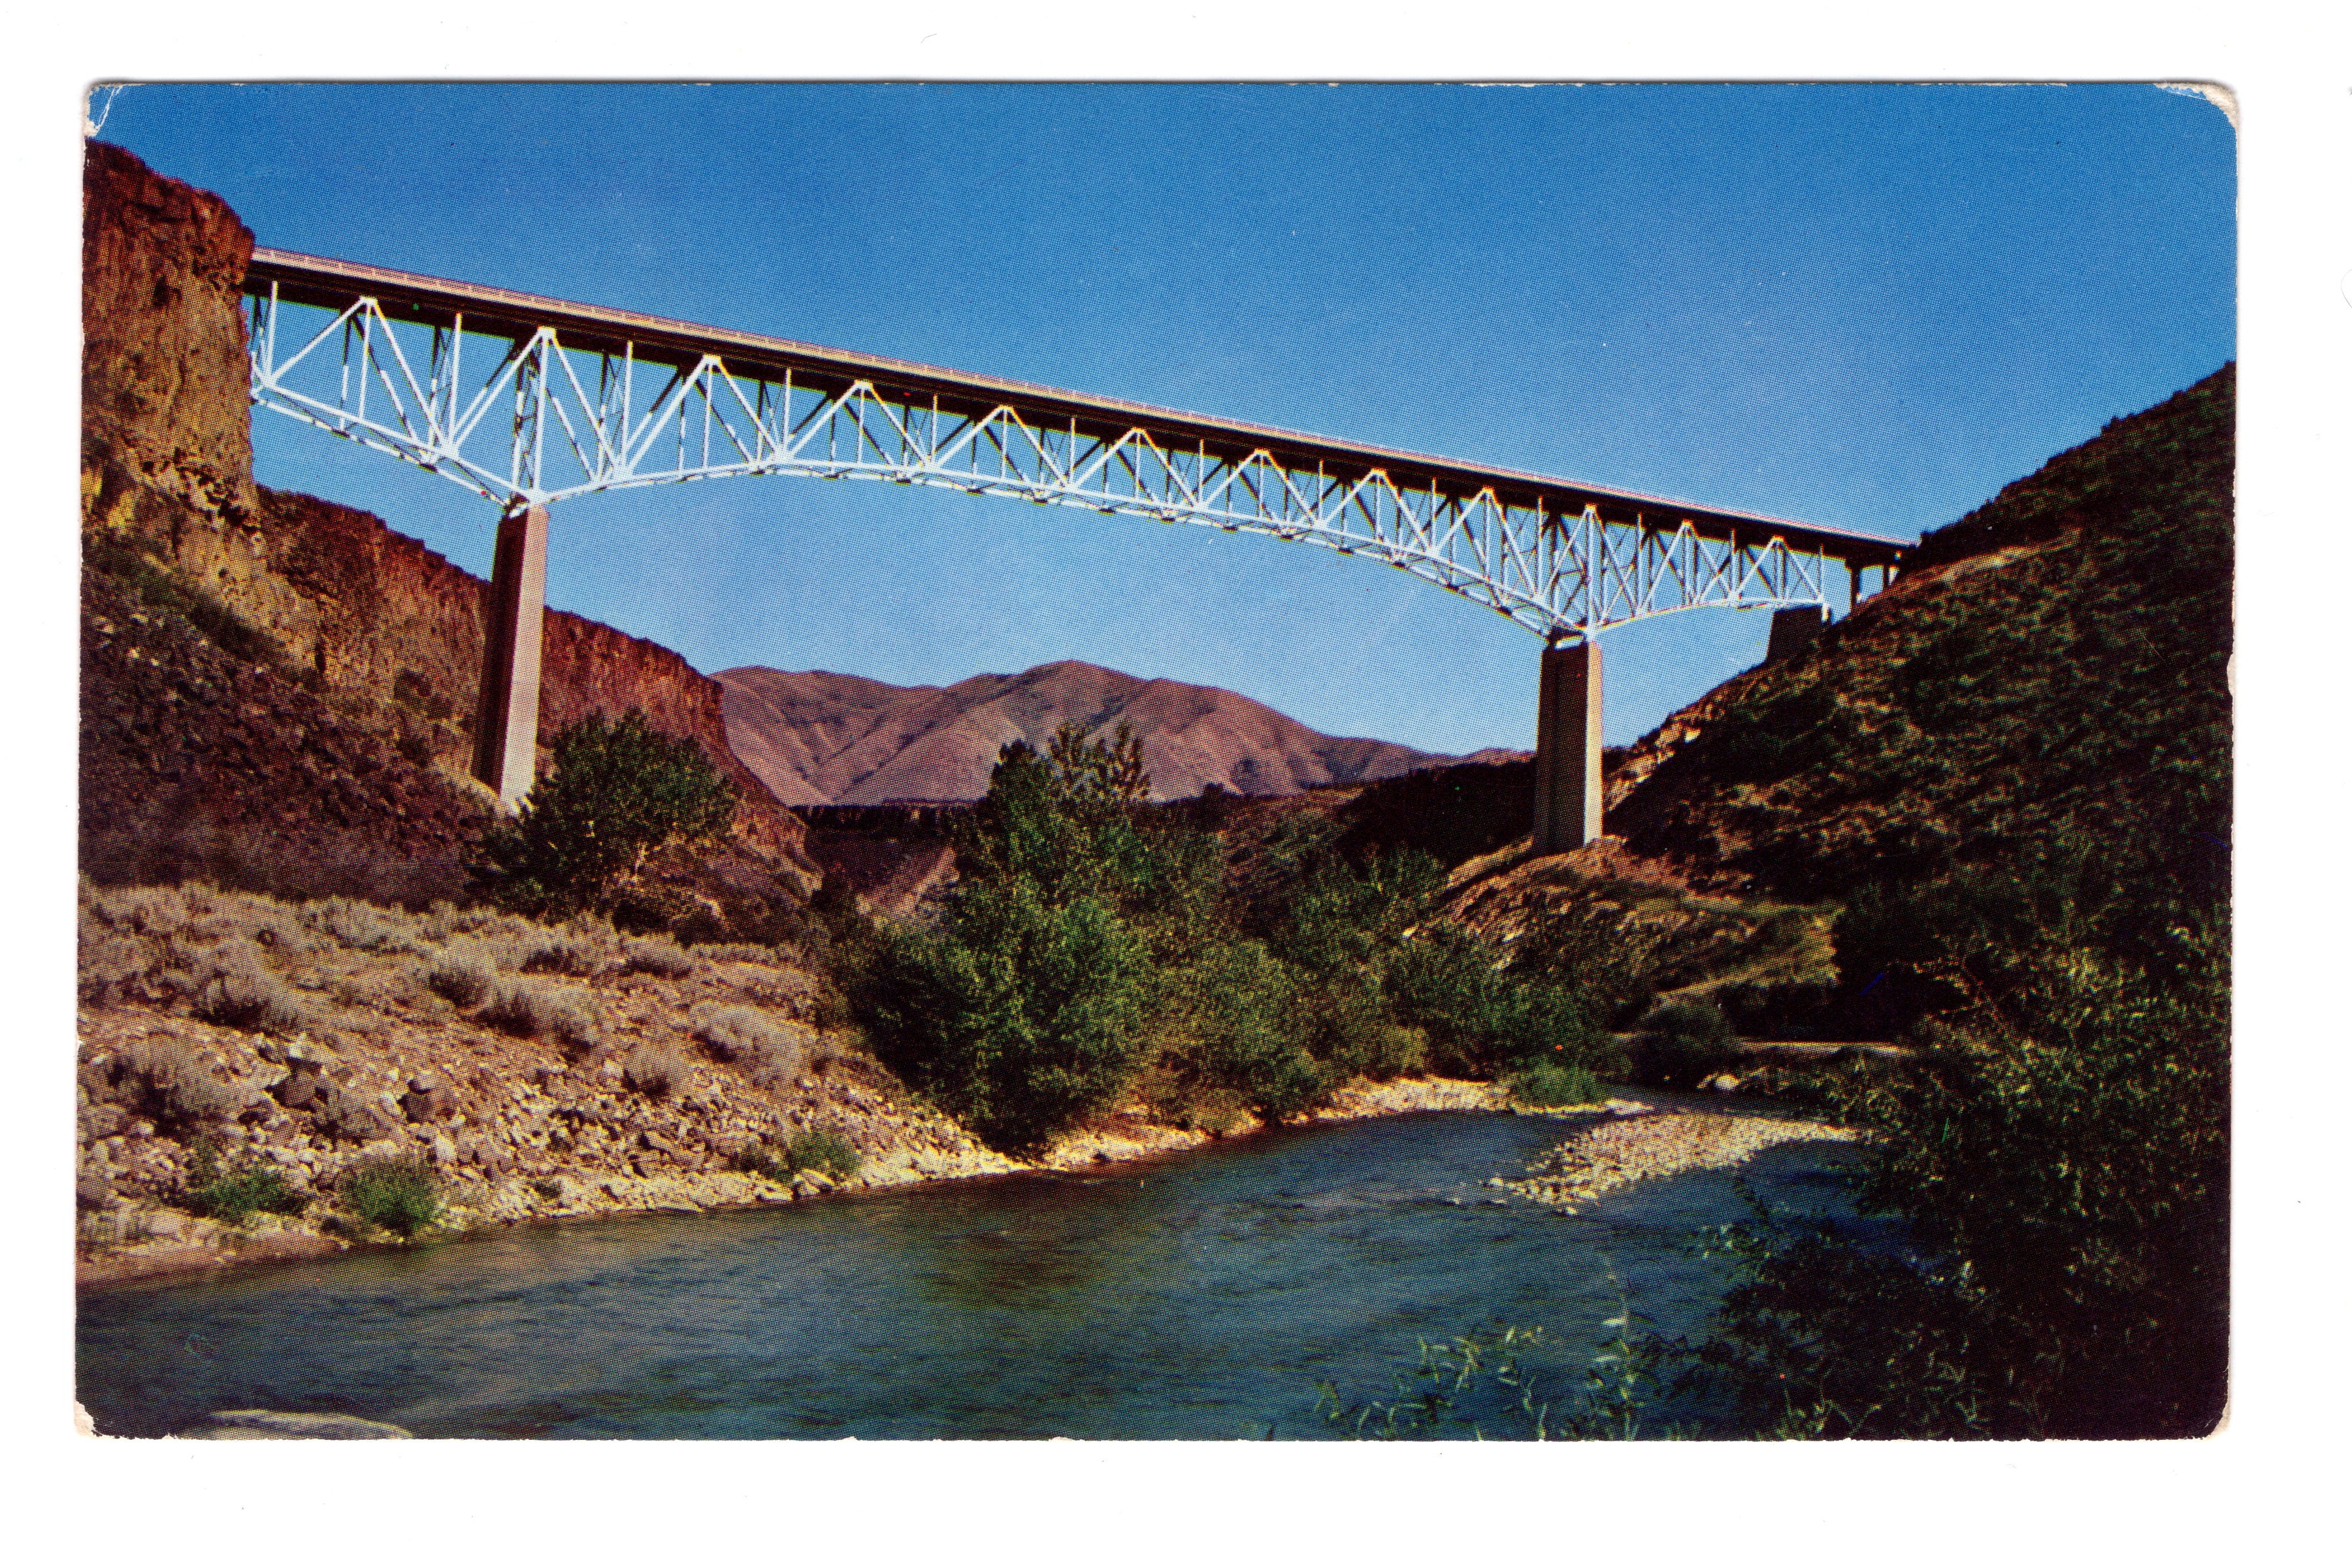 Mores Creek Bridge, Idaho City, East of Boise, Vintage Post Card.